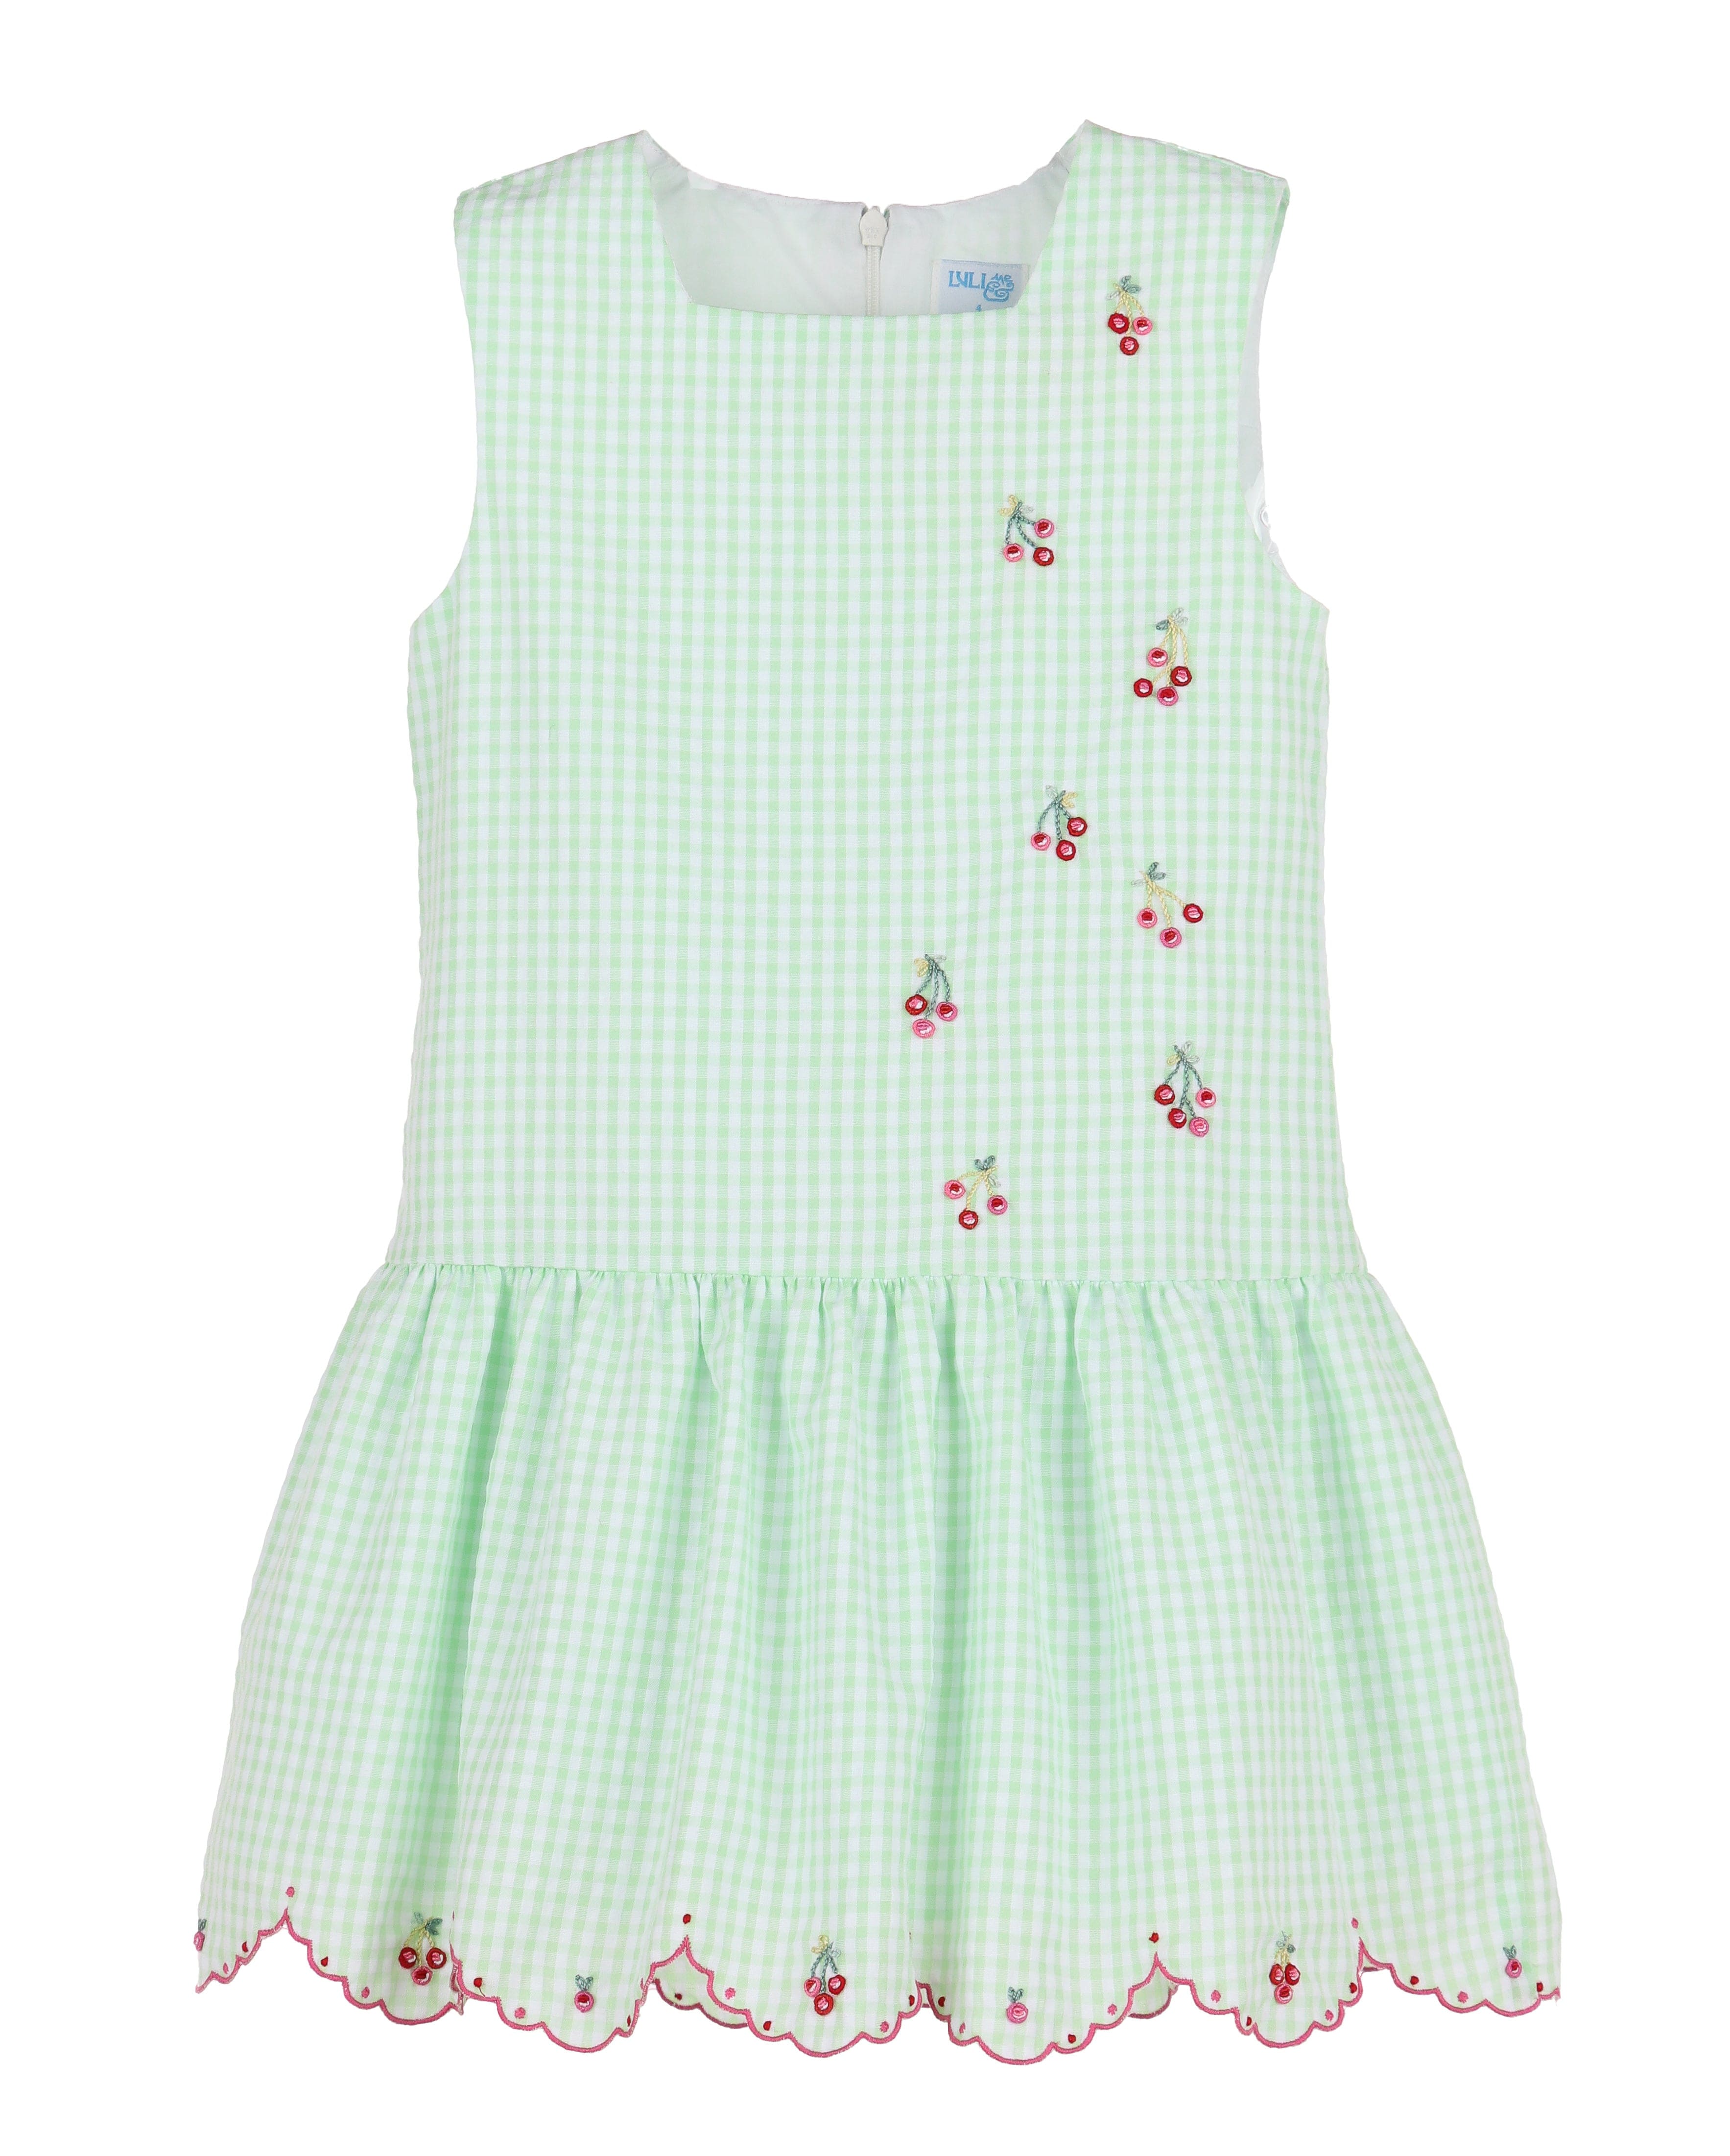 Casero & Associates Casero & Associates Embroidery Cherries Dress - Little Miss Muffin Children & Home